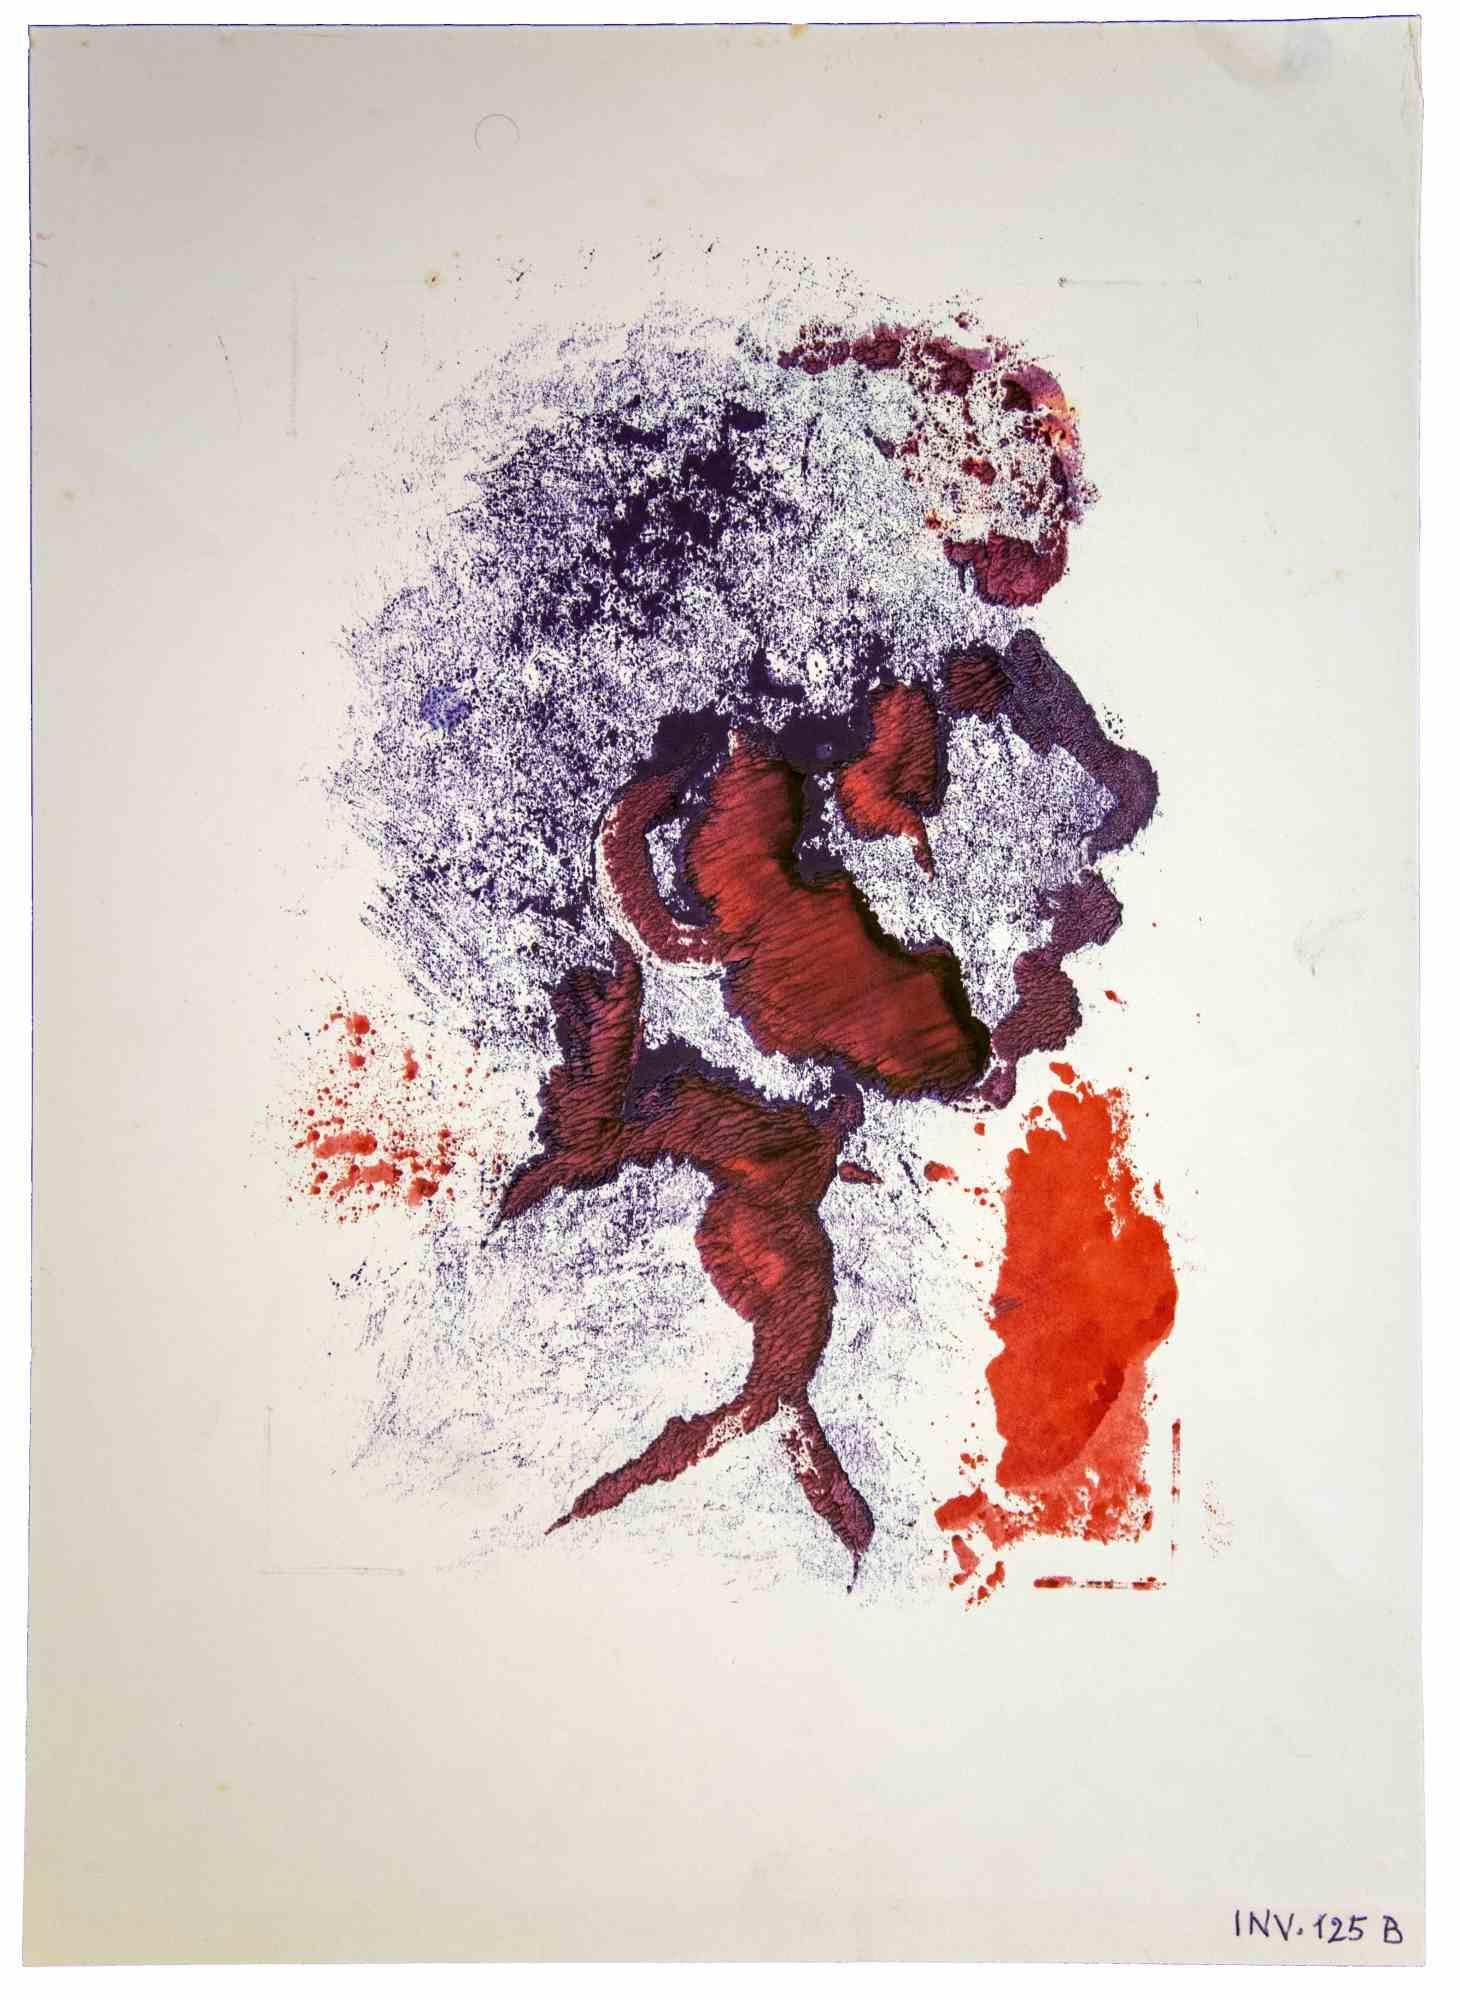 The Profile est une œuvre d'art moderne réalisée par Leo Guida dans les années 1970.

Bon état.

Encre et aquarelle sur papier.

Leo Guida a su tisser un entretien productif sur l'art et la fonction de l'artiste avec de nombreuses générations de